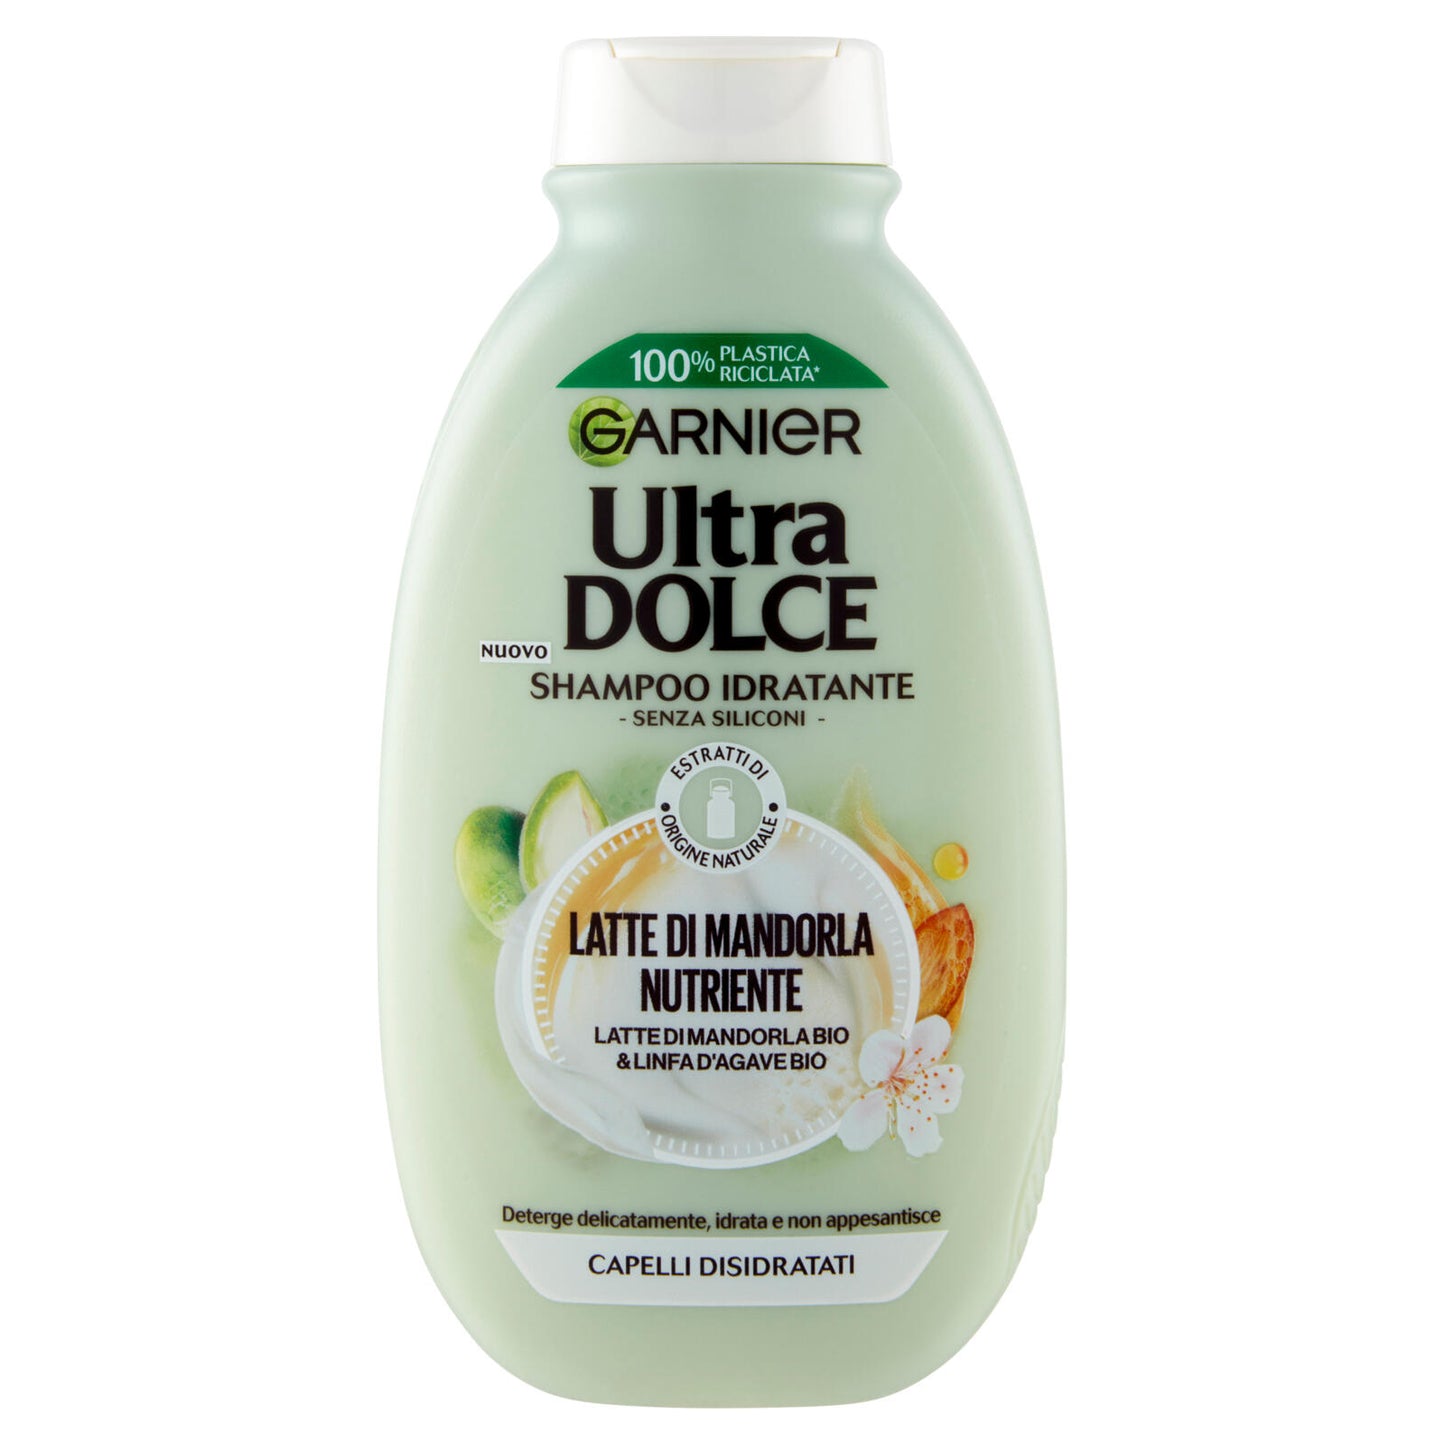 Garnier Ultra Dolce Shampoo Latte di Mandorla, Shampoo Nutriente per Capelli Normali, 250 ml